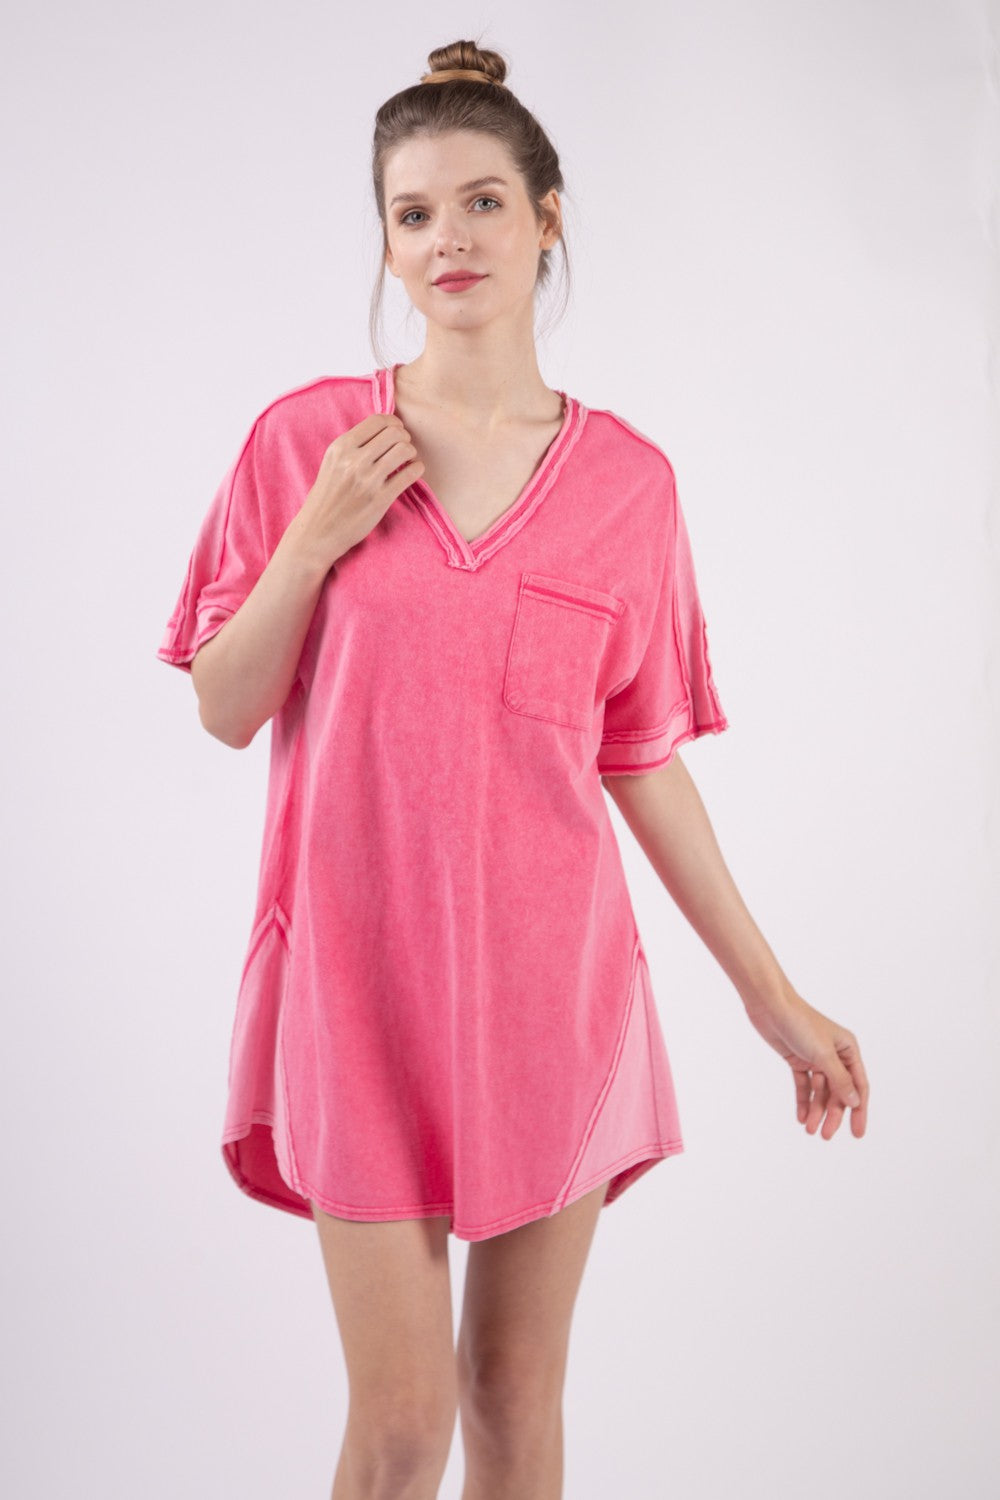 Kayla Hot Pink T-Shirt Dress